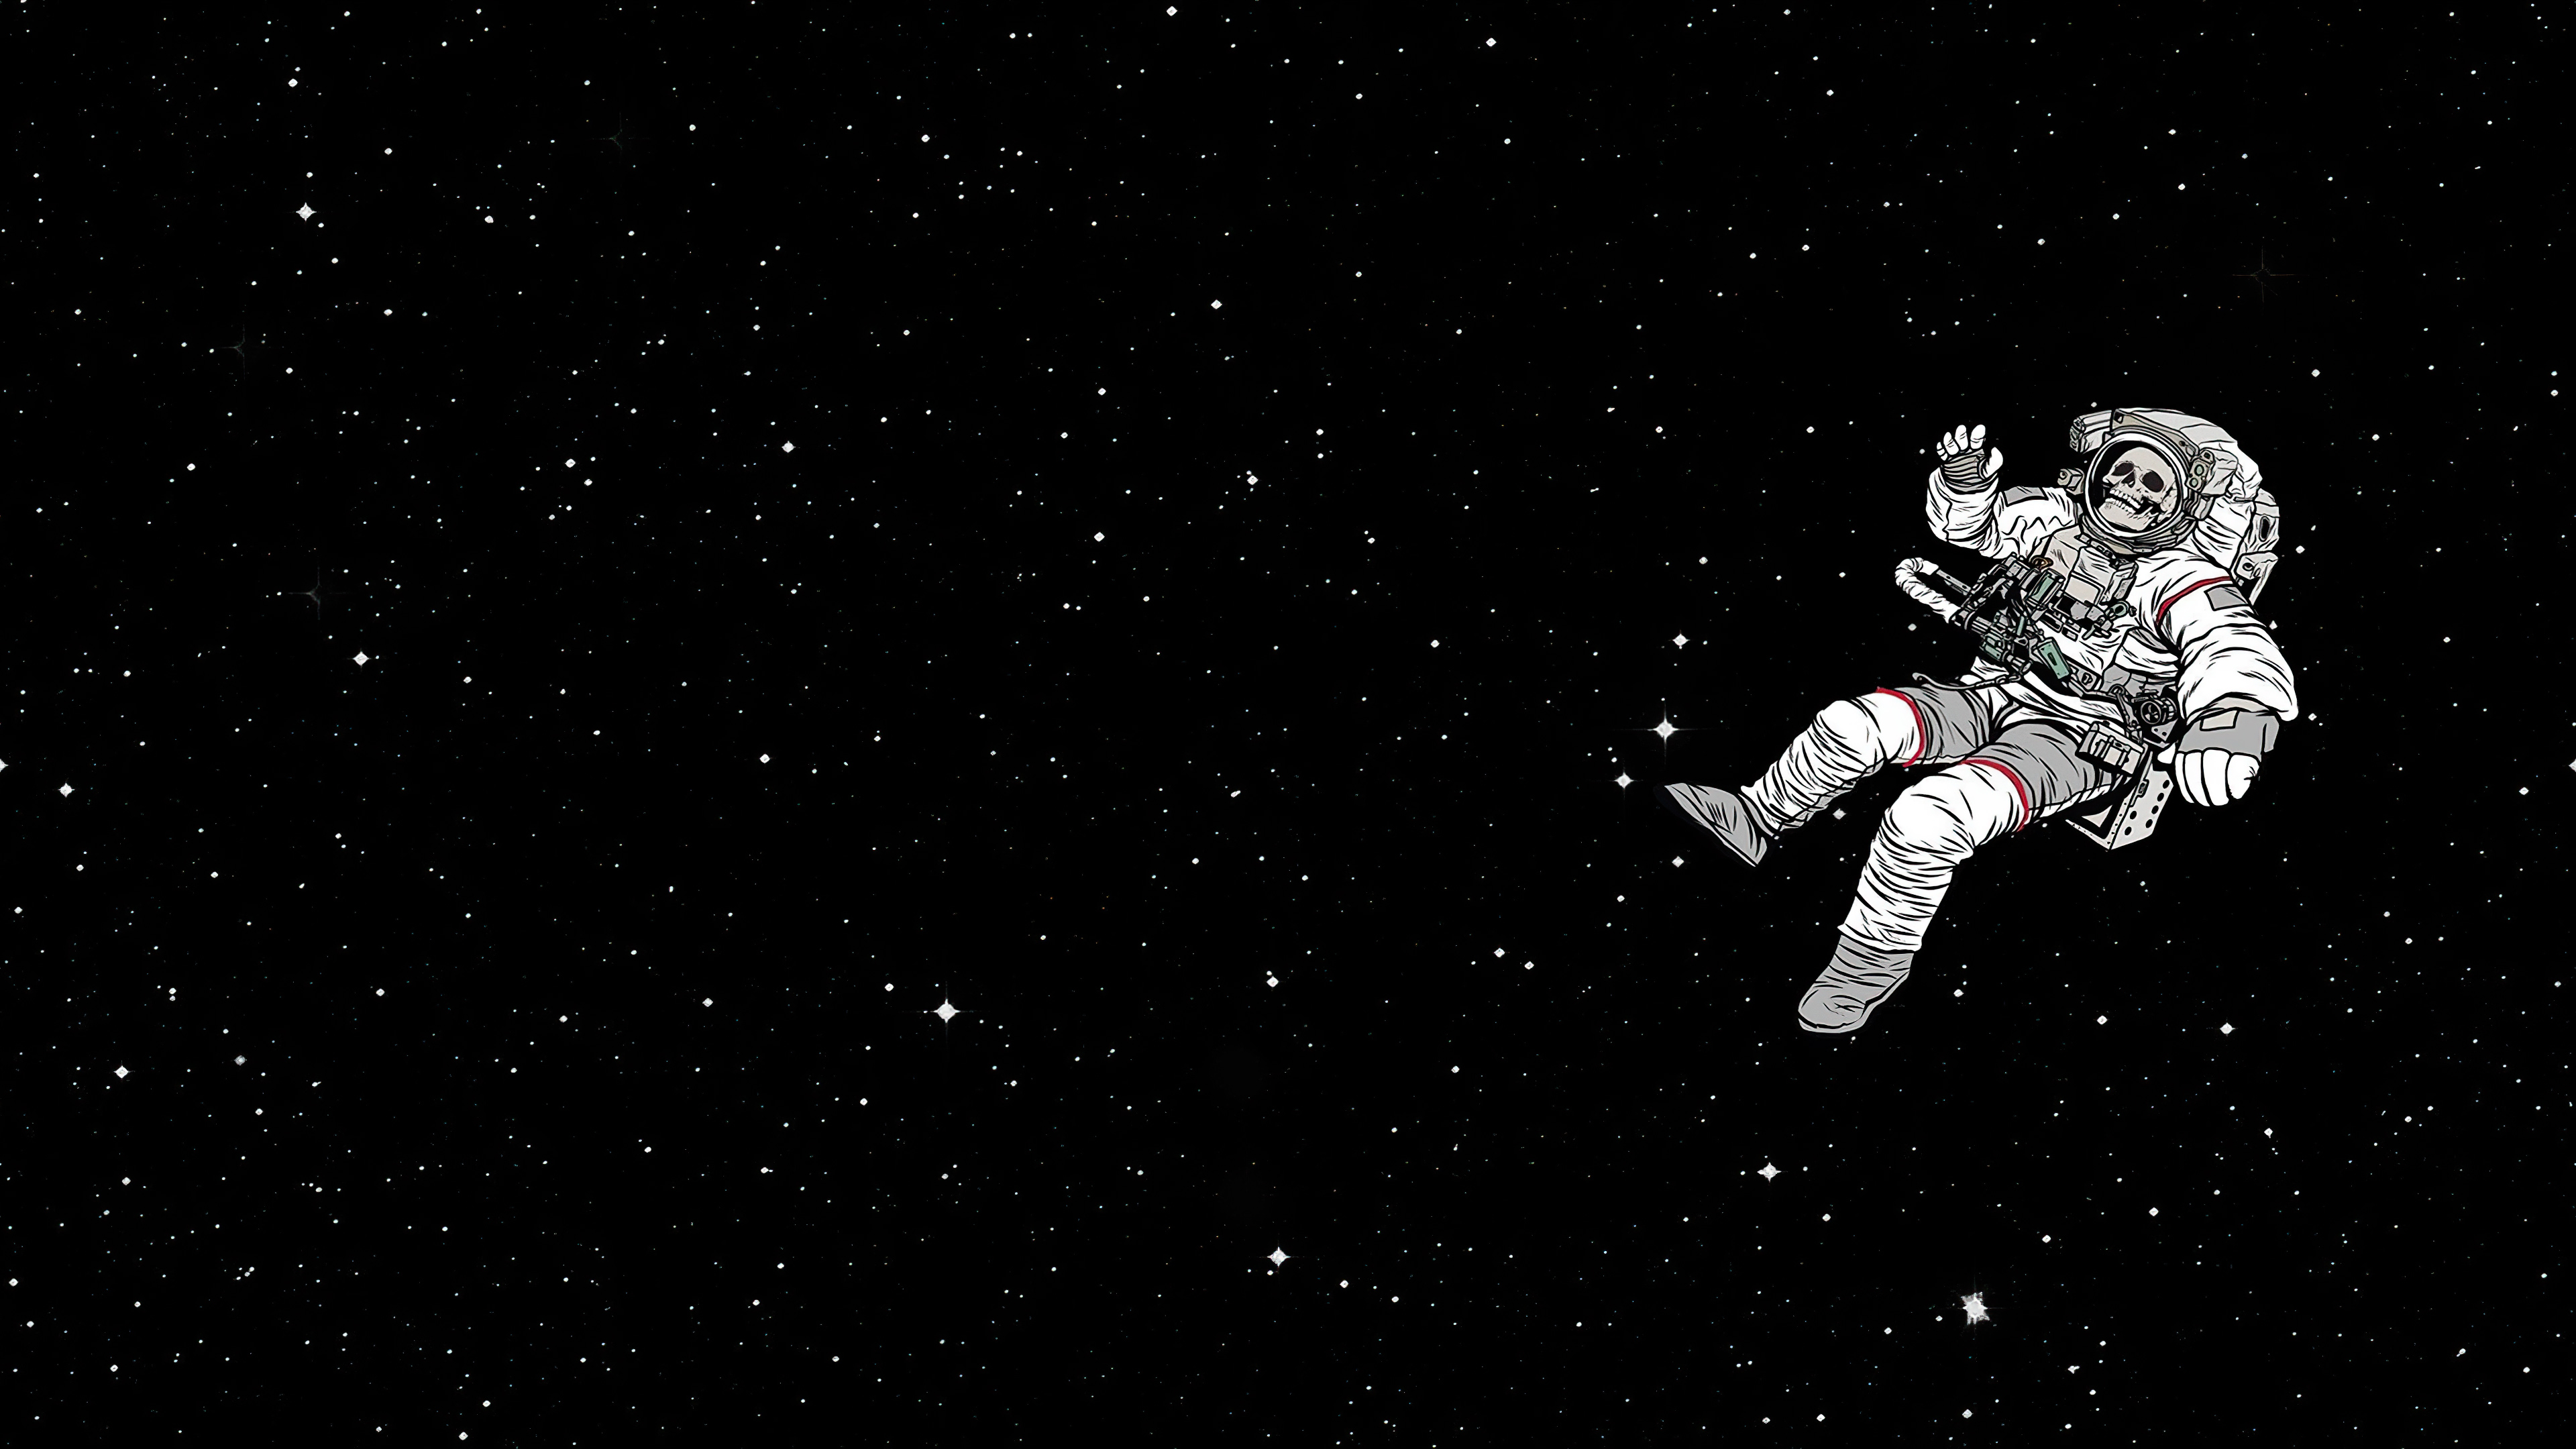 Hãy cùng đắm mình vào không gian bao la với bức ảnh nền 4K về phi hành gia. Những chi tiết sắc nét và màu sắc chân thực sẽ khiến bạn cảm thấy như đang lạc vào vũ trụ thực sự.